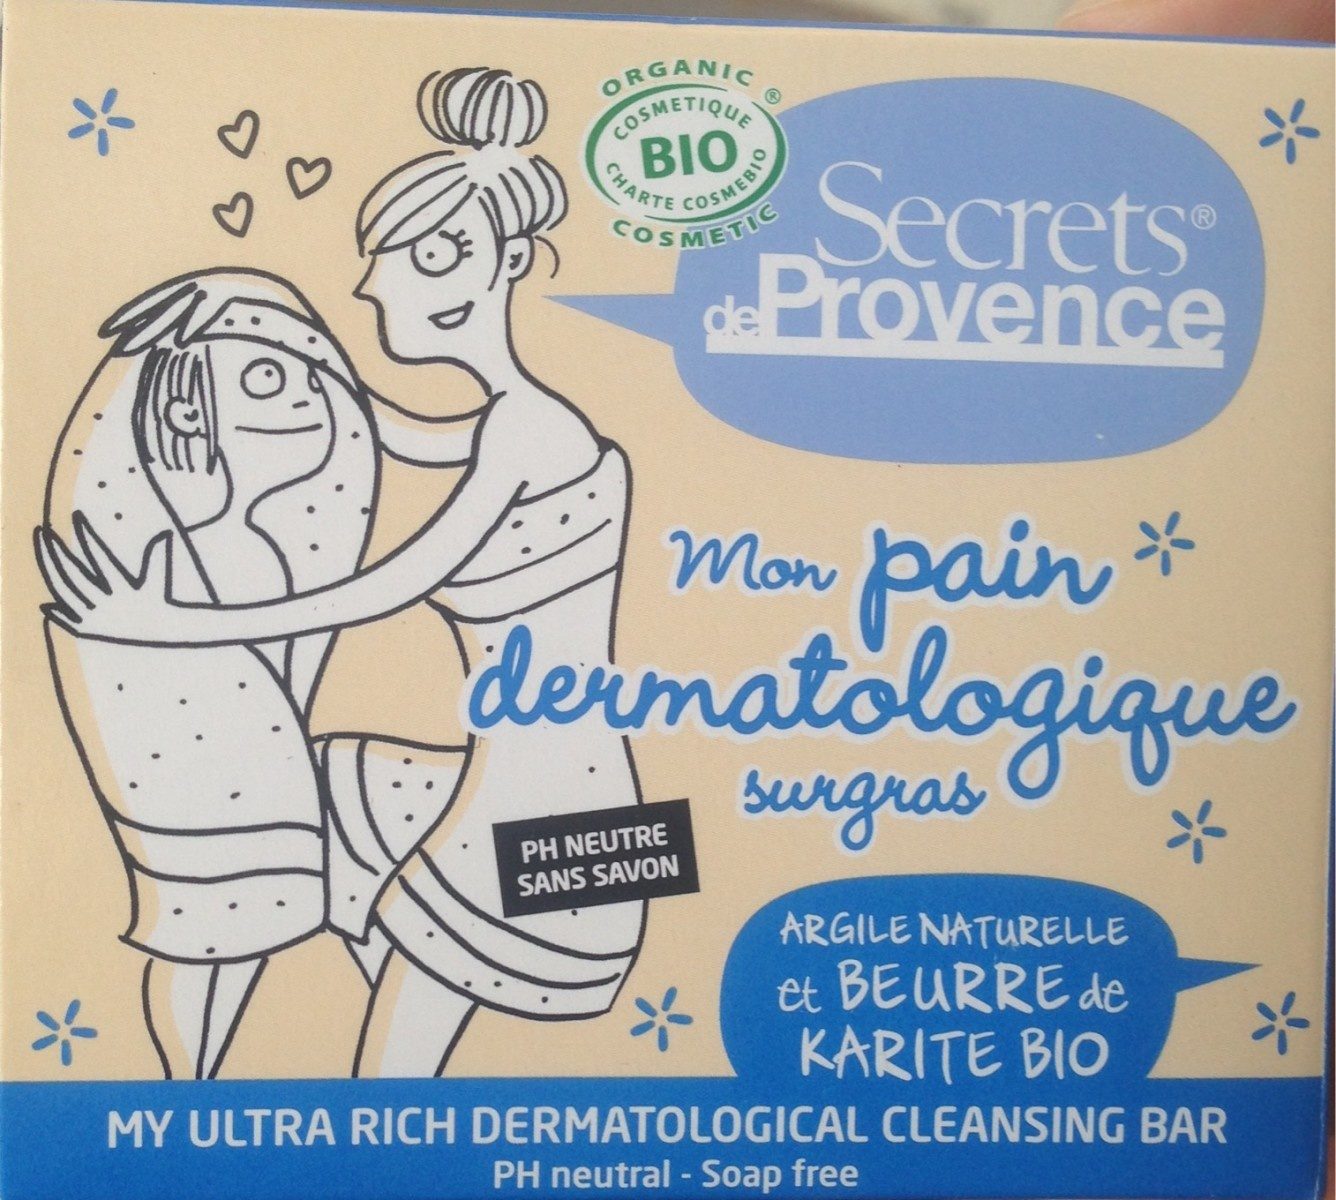 Pain Dermatologique Sugras Bio - Product - fr